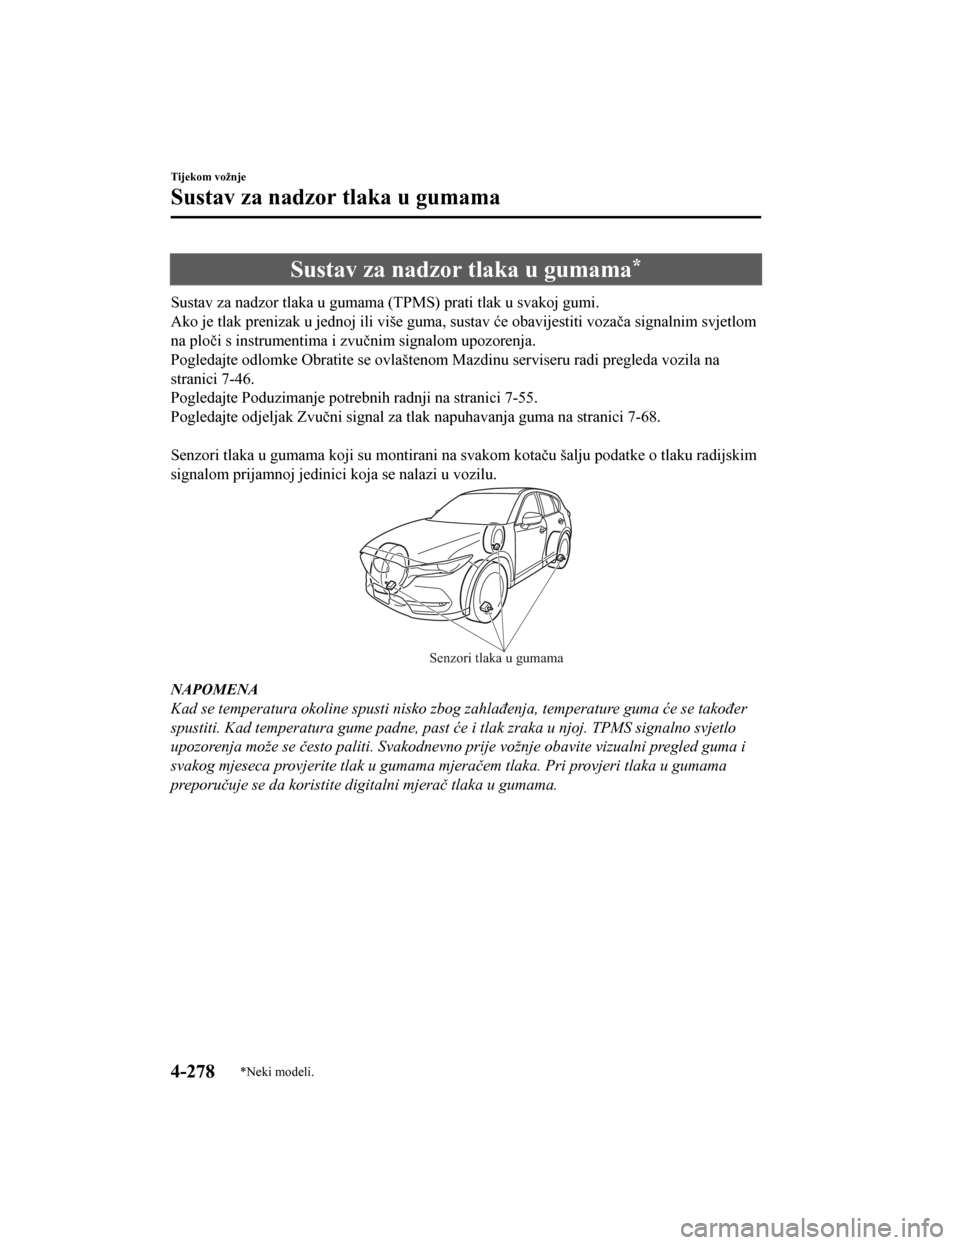 MAZDA MODEL CX-5 2019  Upute za uporabu (in Crotian) Sustav za nadzor tlaka u gumama*
Sustav za nadzor tlaka u gumama (TPMS) prati tlak u svakoj gumi.
Ako je tlak prenizak u jednoj ili više guma, sustav će obavijestiti vozača signalnim svjetlom
na pl